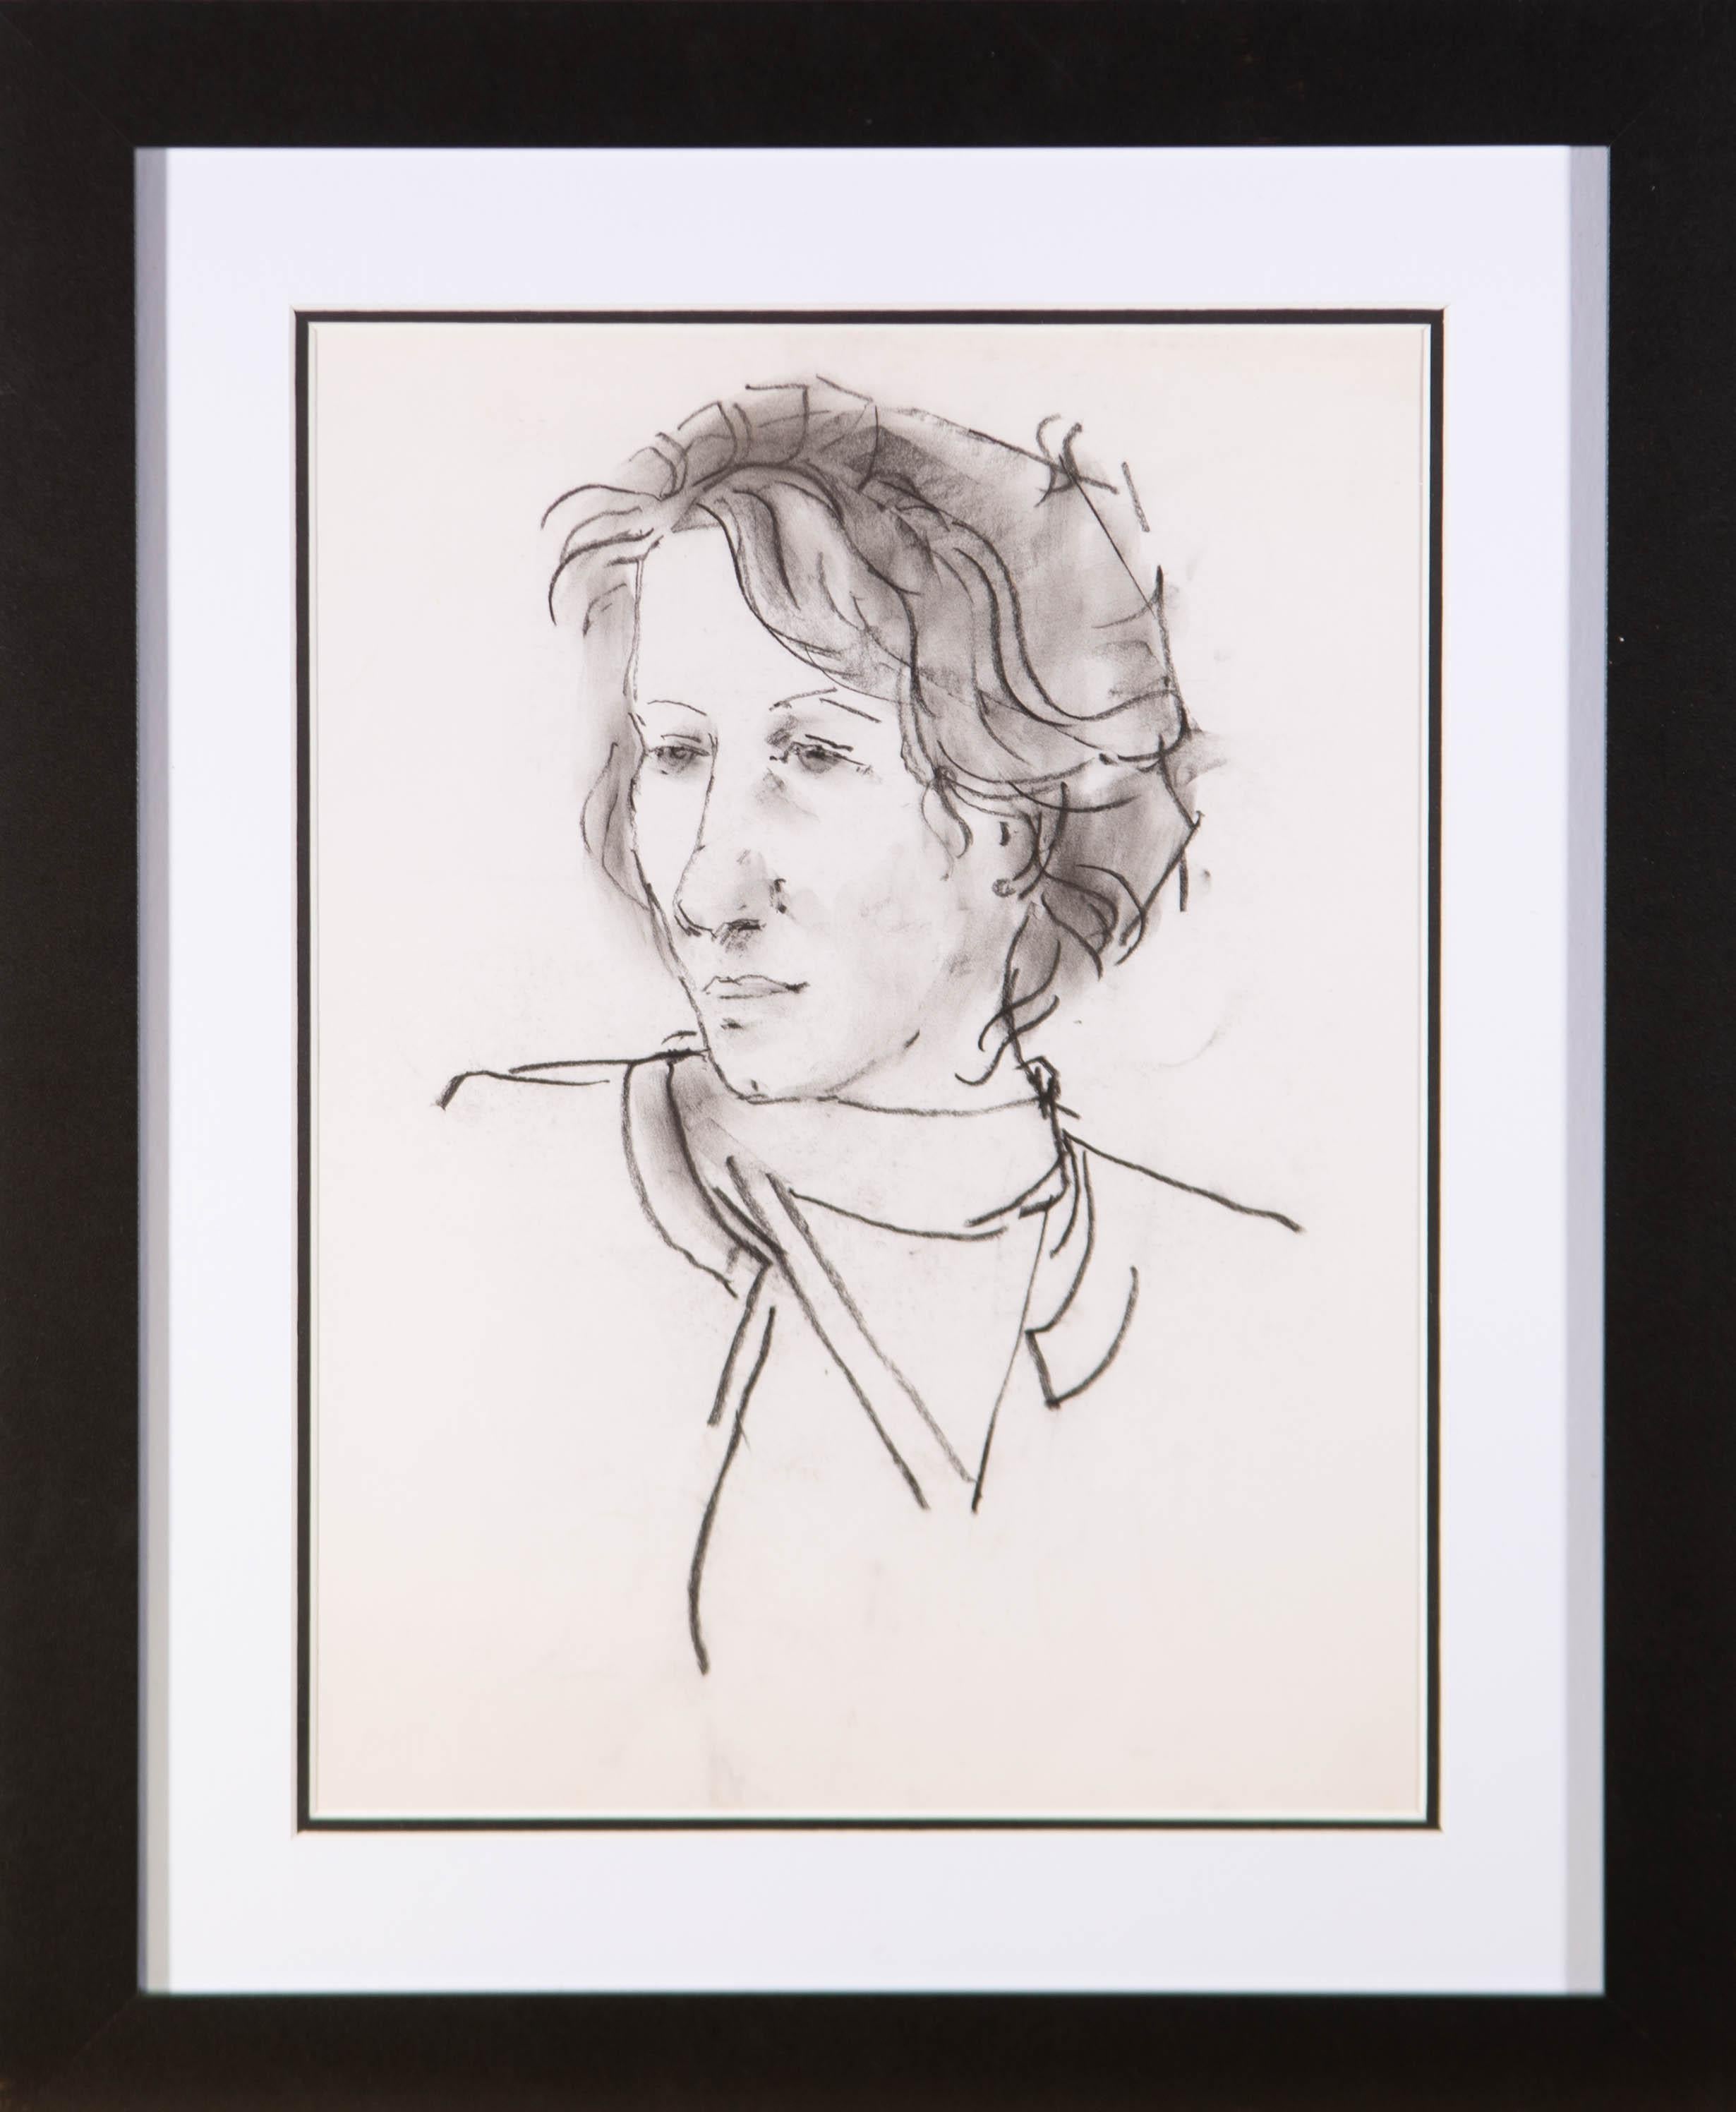 Un charmant dessin au fusain de l'artiste Peter Collins, représentant l'étude d'une femme aux cheveux courts. Non signée. Bien présenté dans un double carton blanc sur noir et dans un simple cadre noir contemporain. On a tissé.
